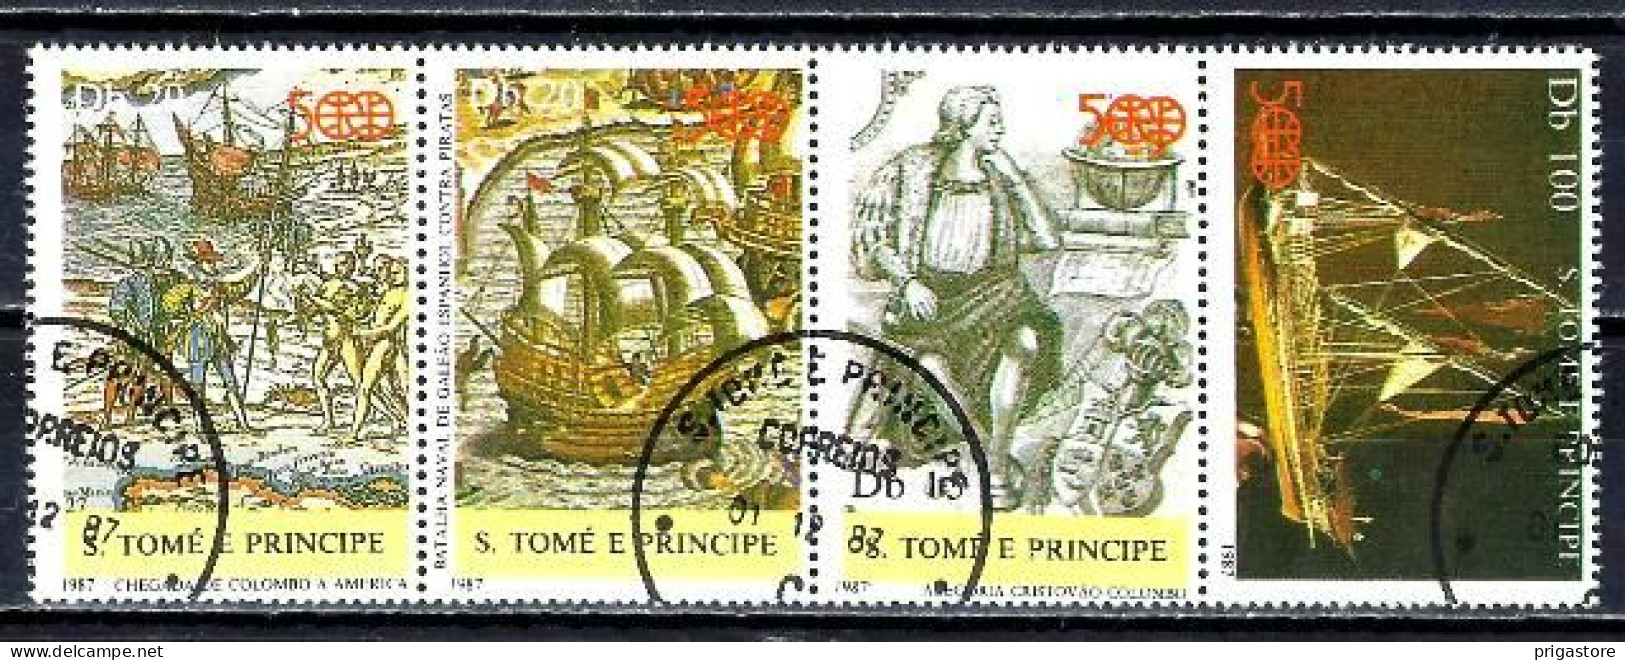 Saint Thomas Et Prince 1987 Bateaux Voiliers (62) Yvert N° 884 à 886 + Timbre Du BF 52 Oblitérés Used - Sao Tomé Y Príncipe